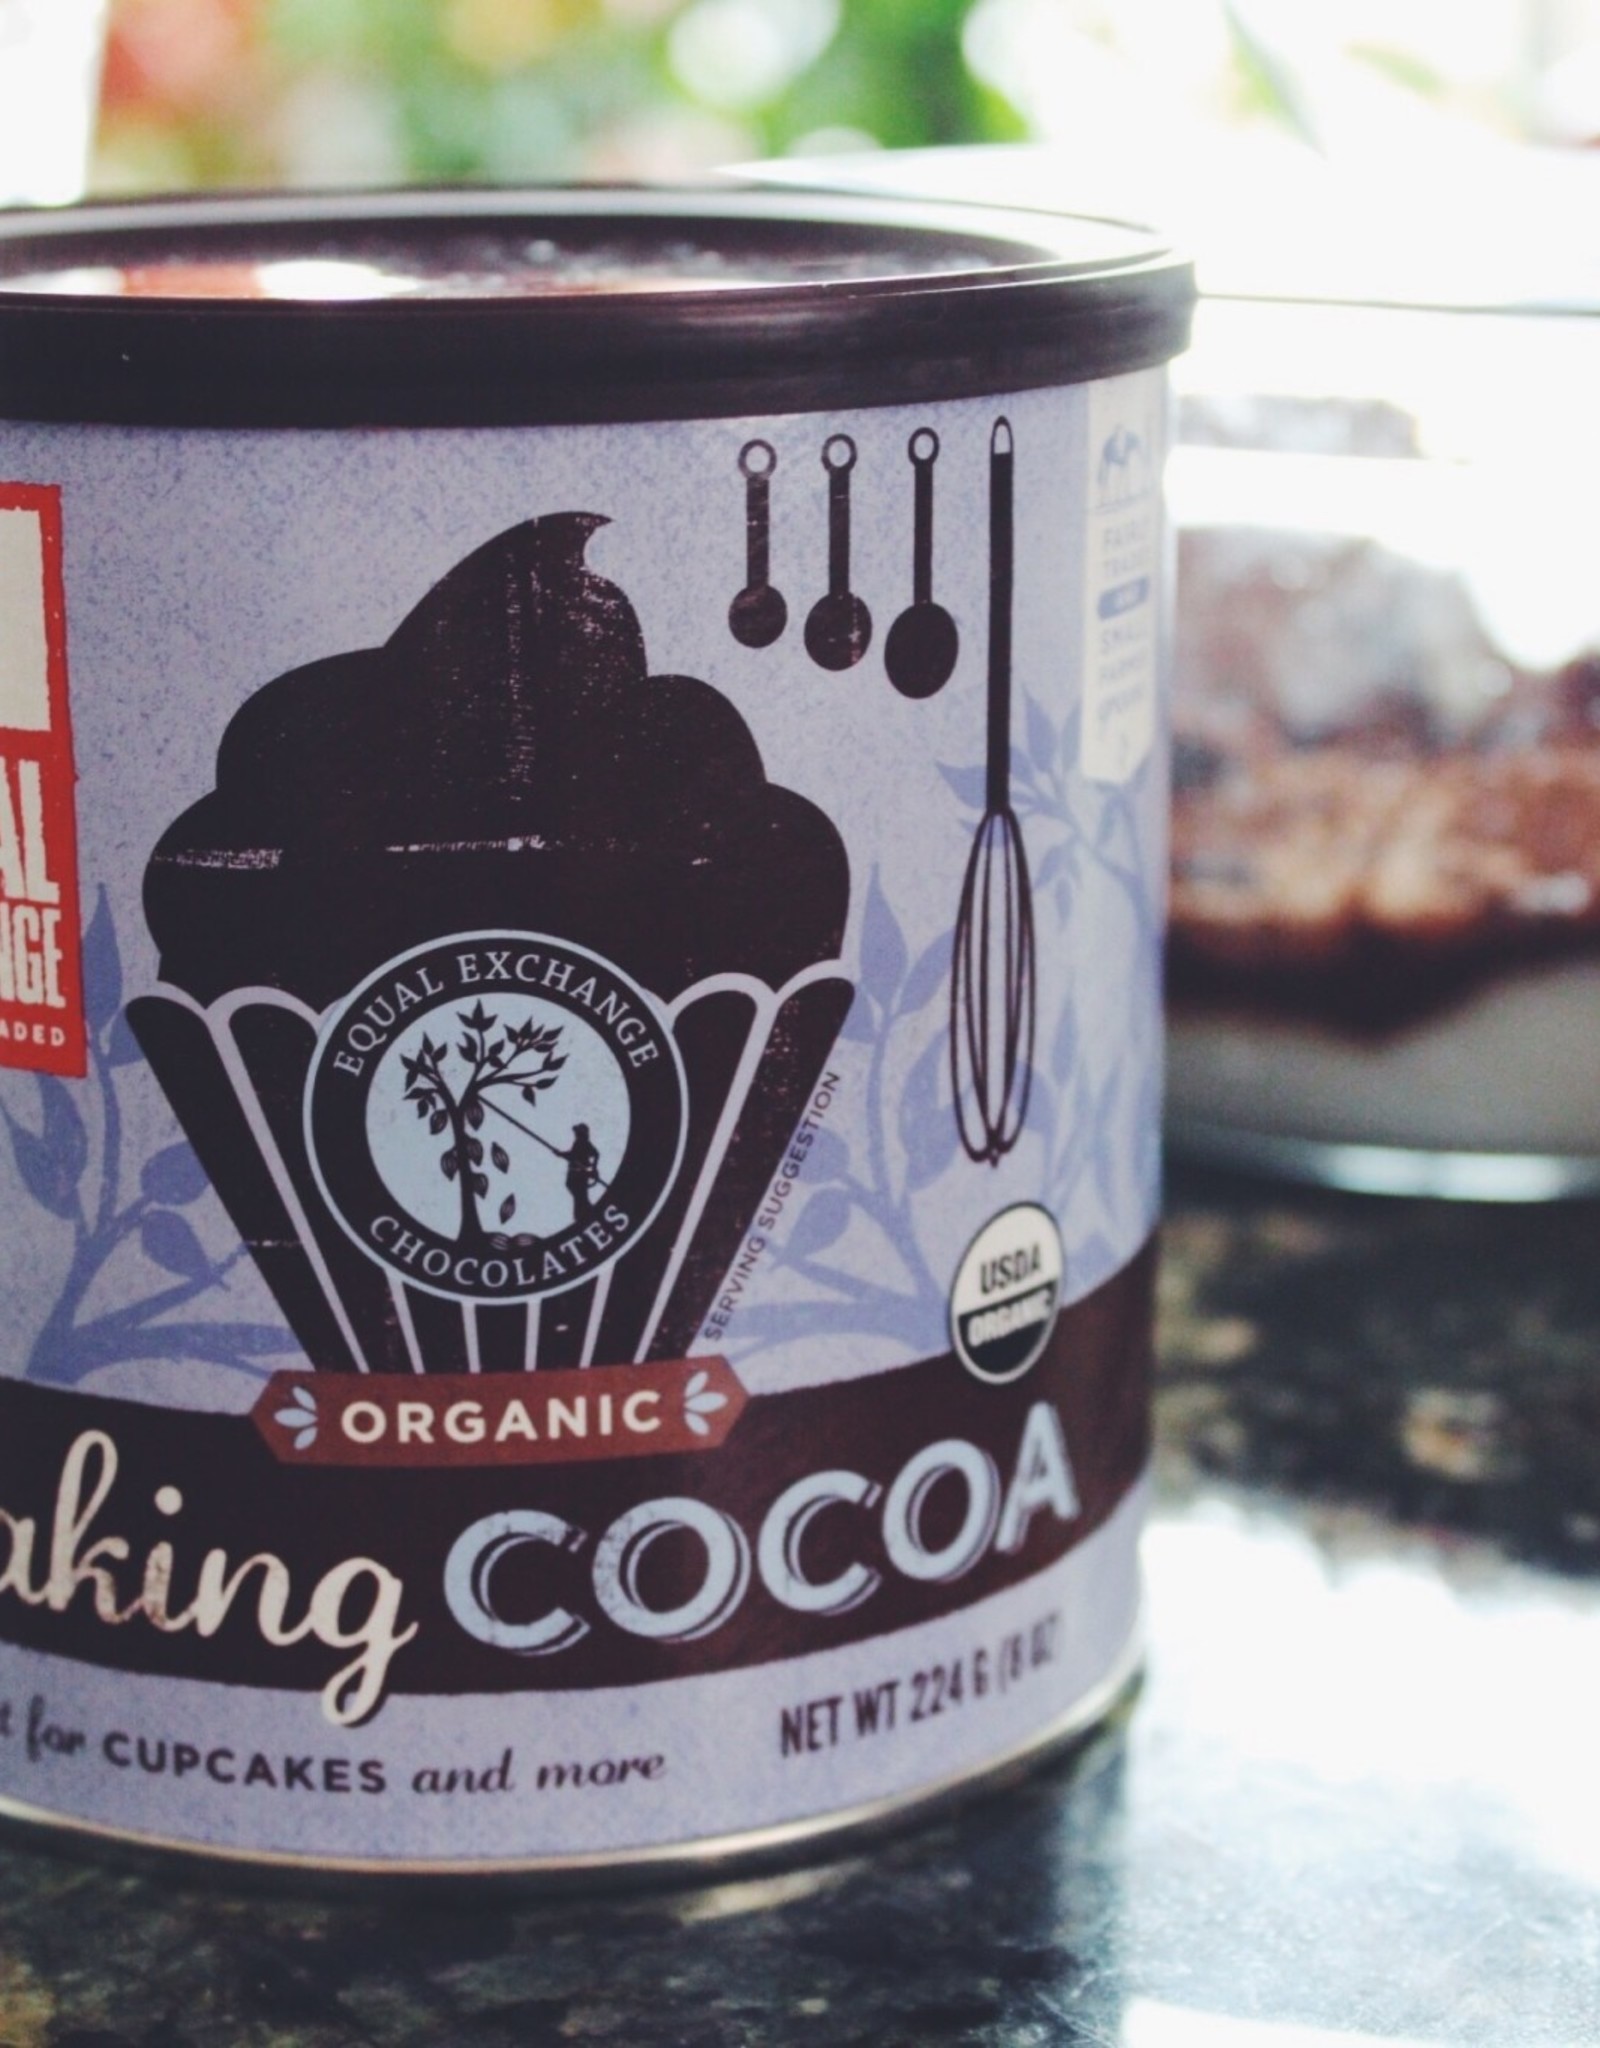 Equal Exchange Organic Baking Cocoa 8 oz